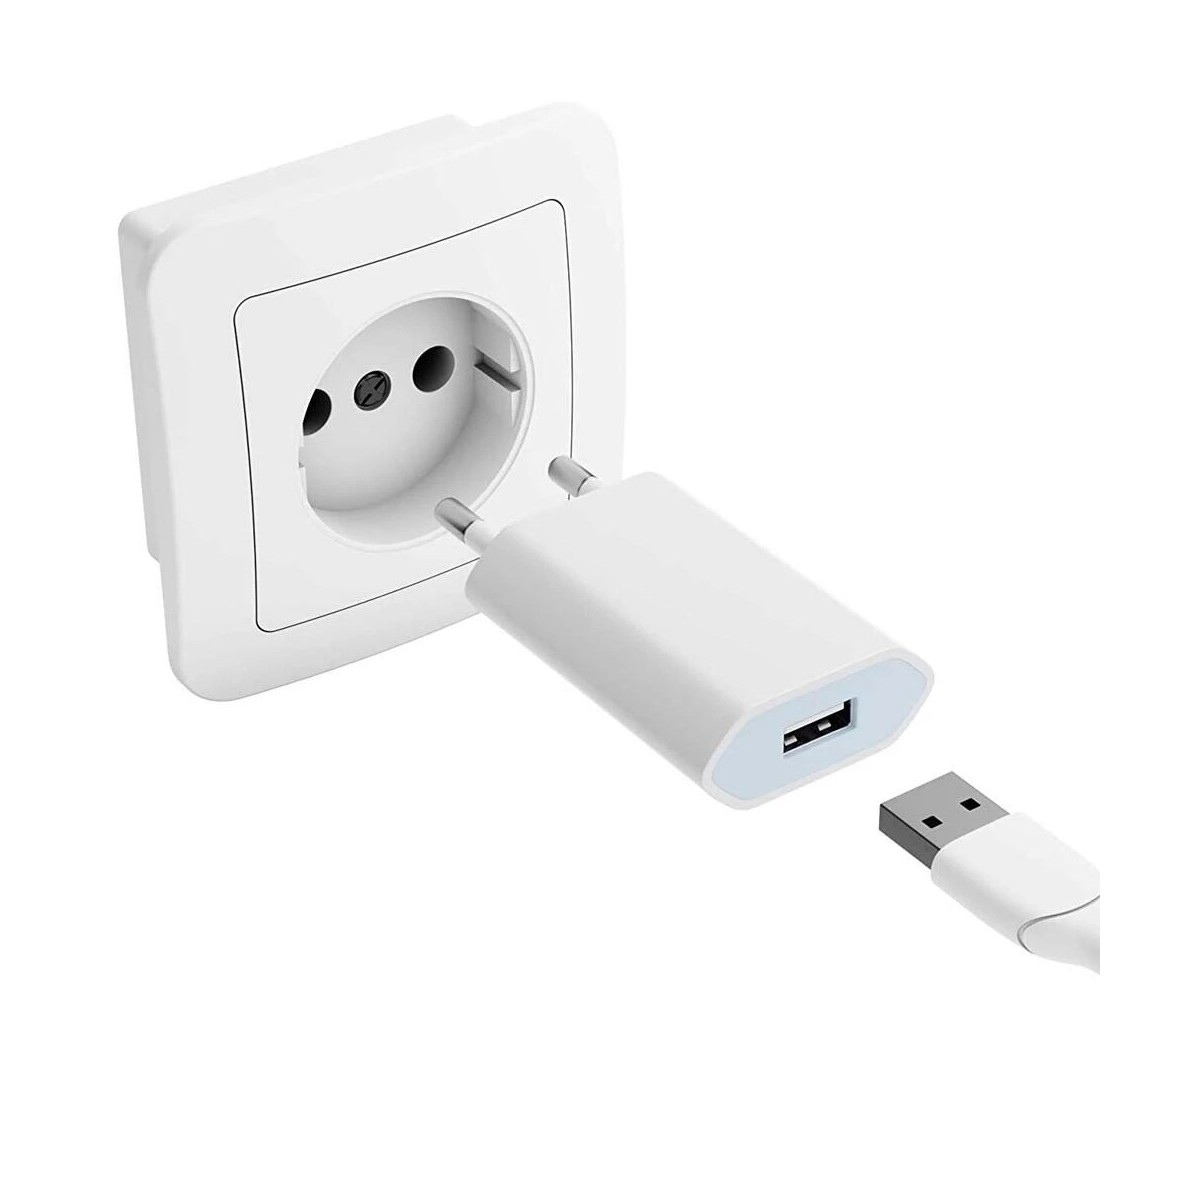 Adaptateur Secteur USB pour Apple iPhone 7 iPhone Xs Max Prise Chargeur USB  3.4A